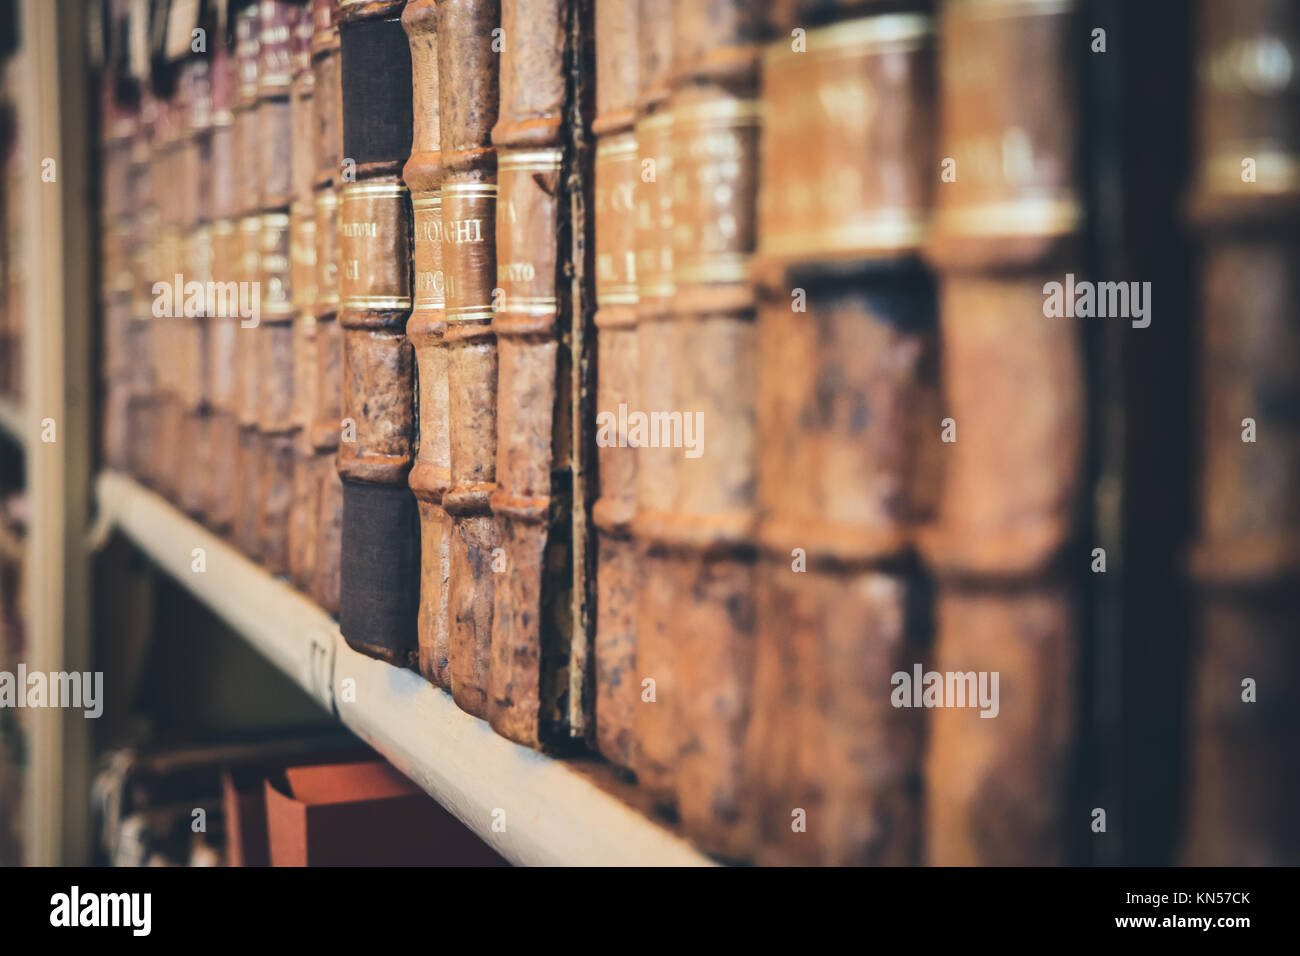 Alte Bücher in den Regalen einer Bibliothek. Stockfoto